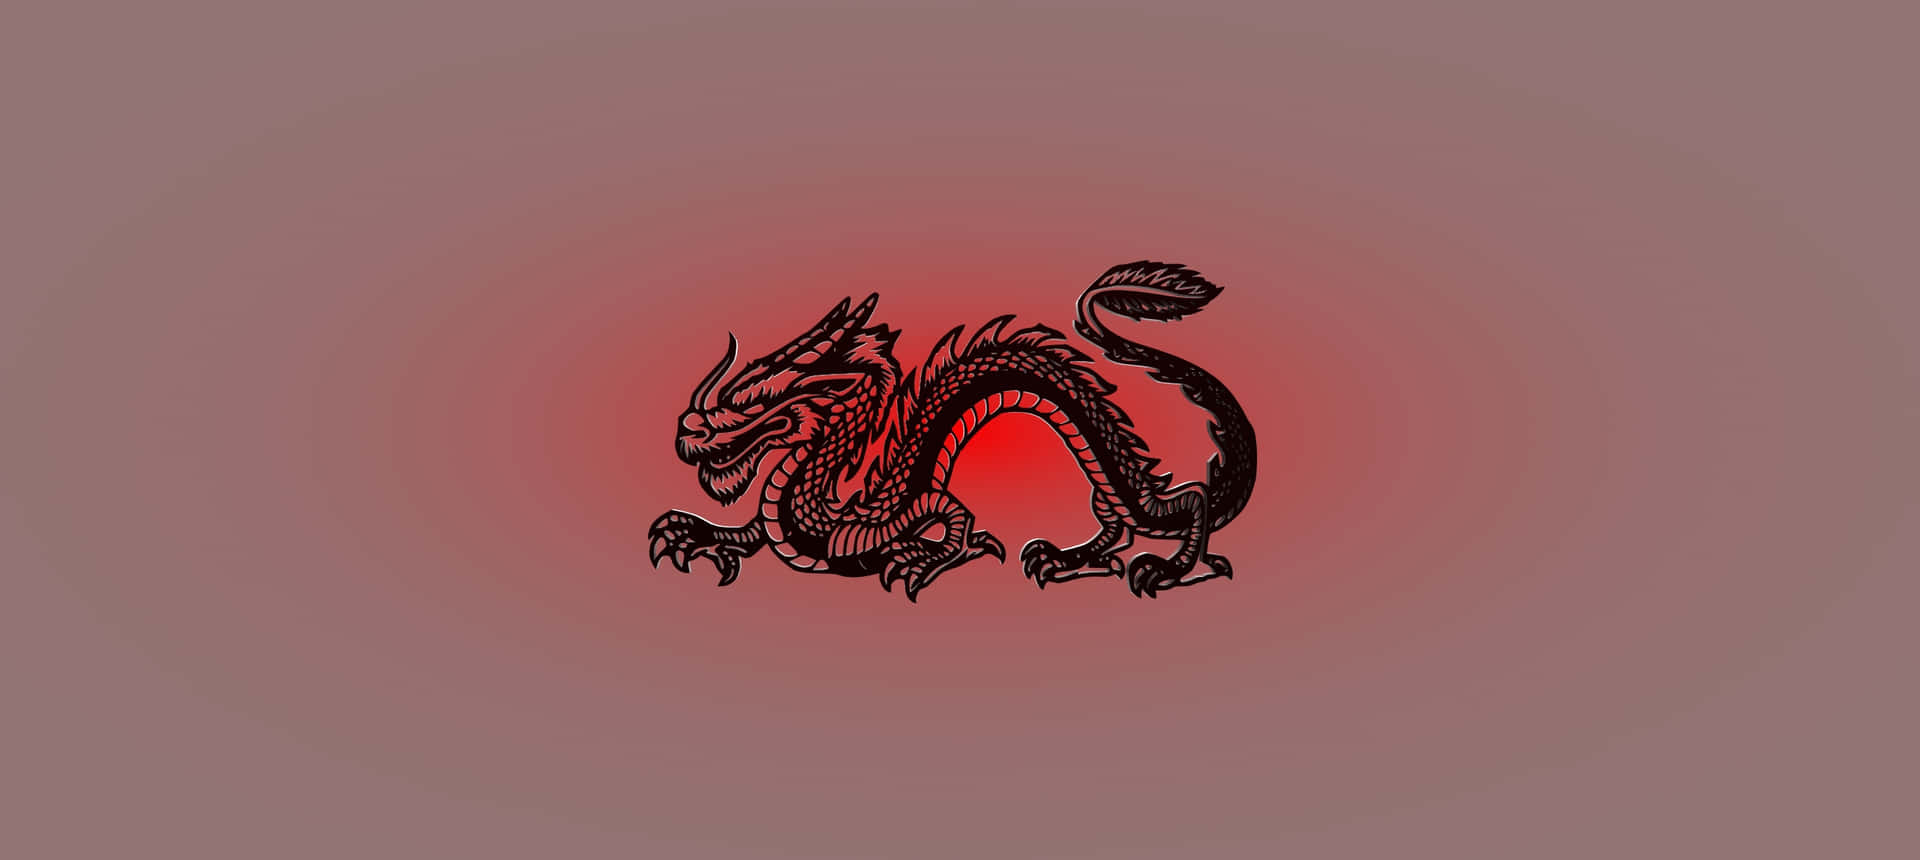 Red Black Dragon Illustration Wallpaper